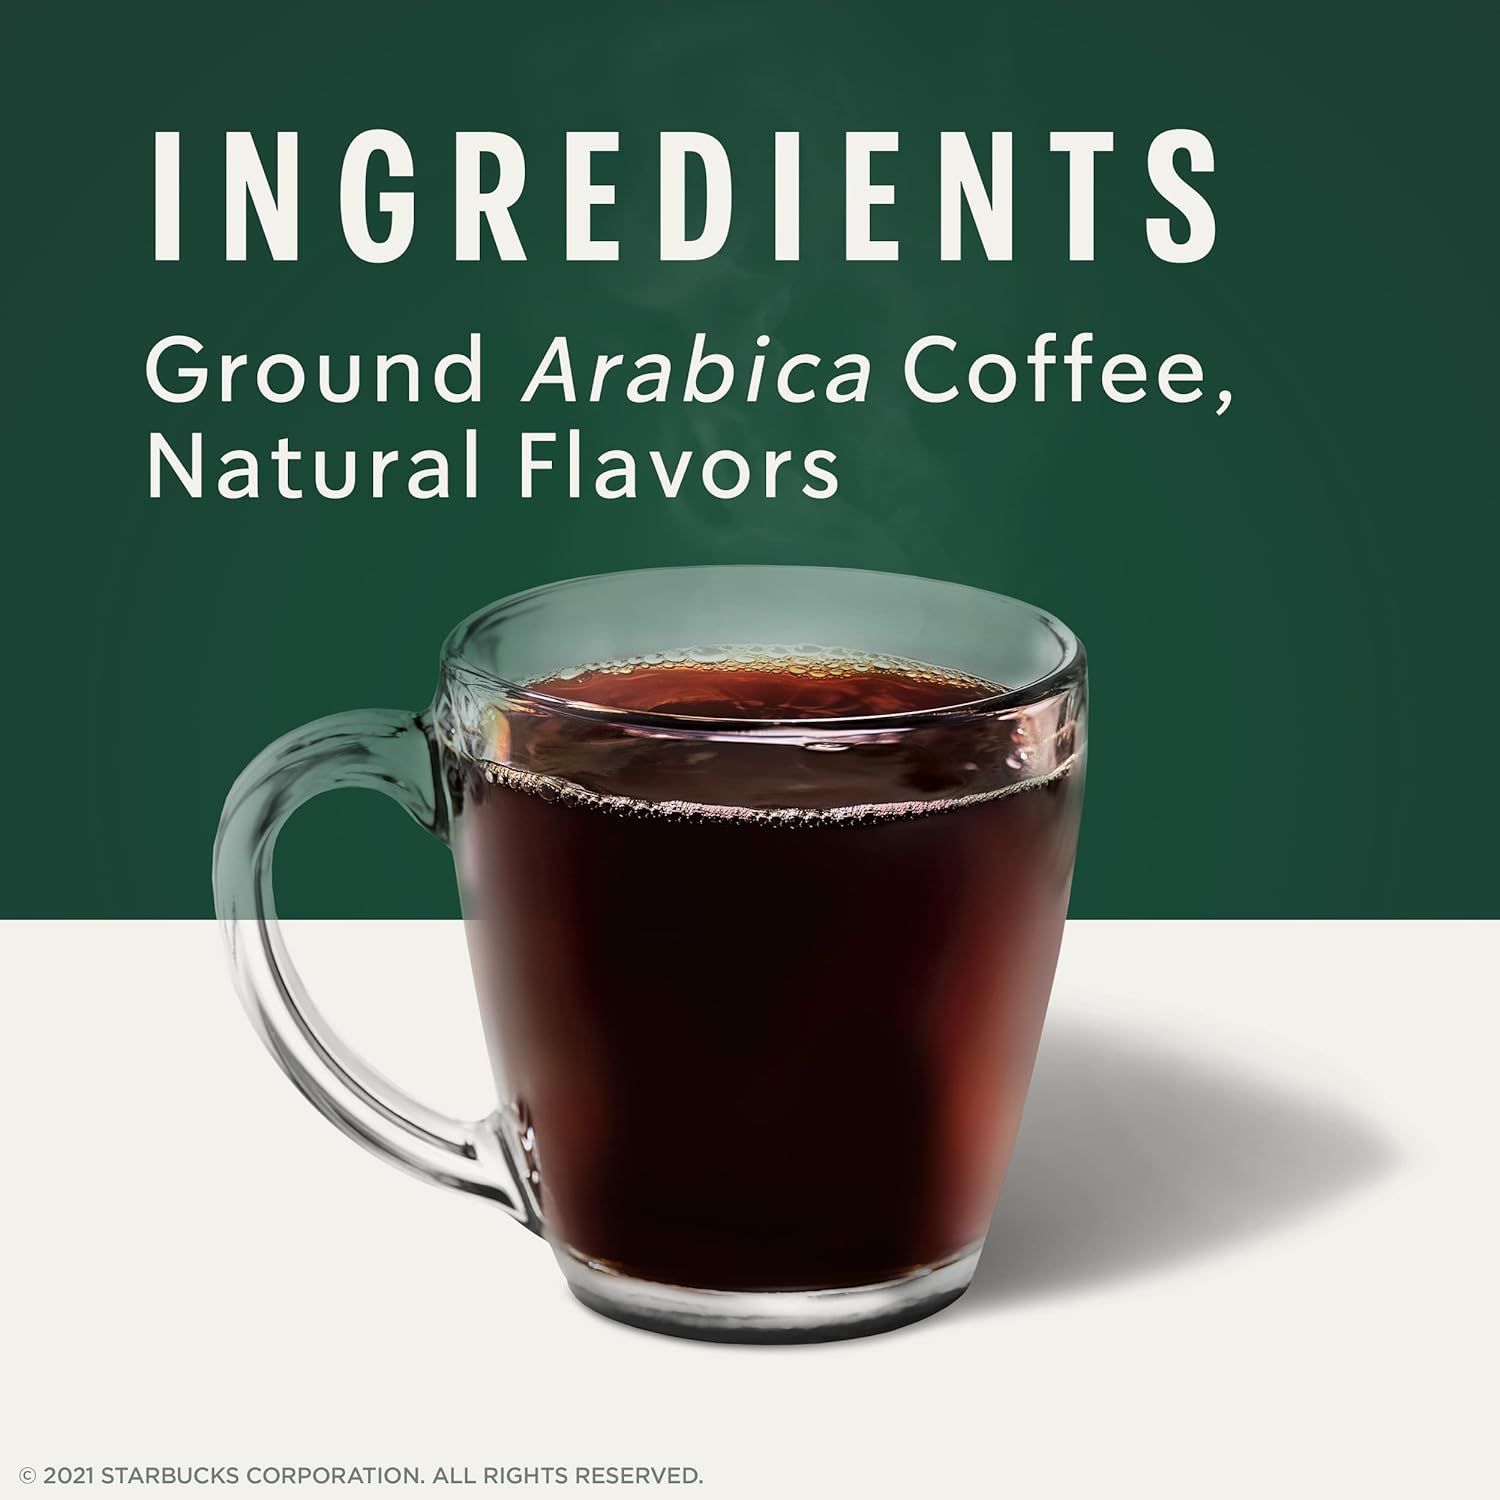 Starbucks K-Cup Coffee Pods—Starbucks Blonde, Medium, Dark Roast & Flavored Coffee—Variety Pack for Keurig Brewers—1 box (40 pods total)